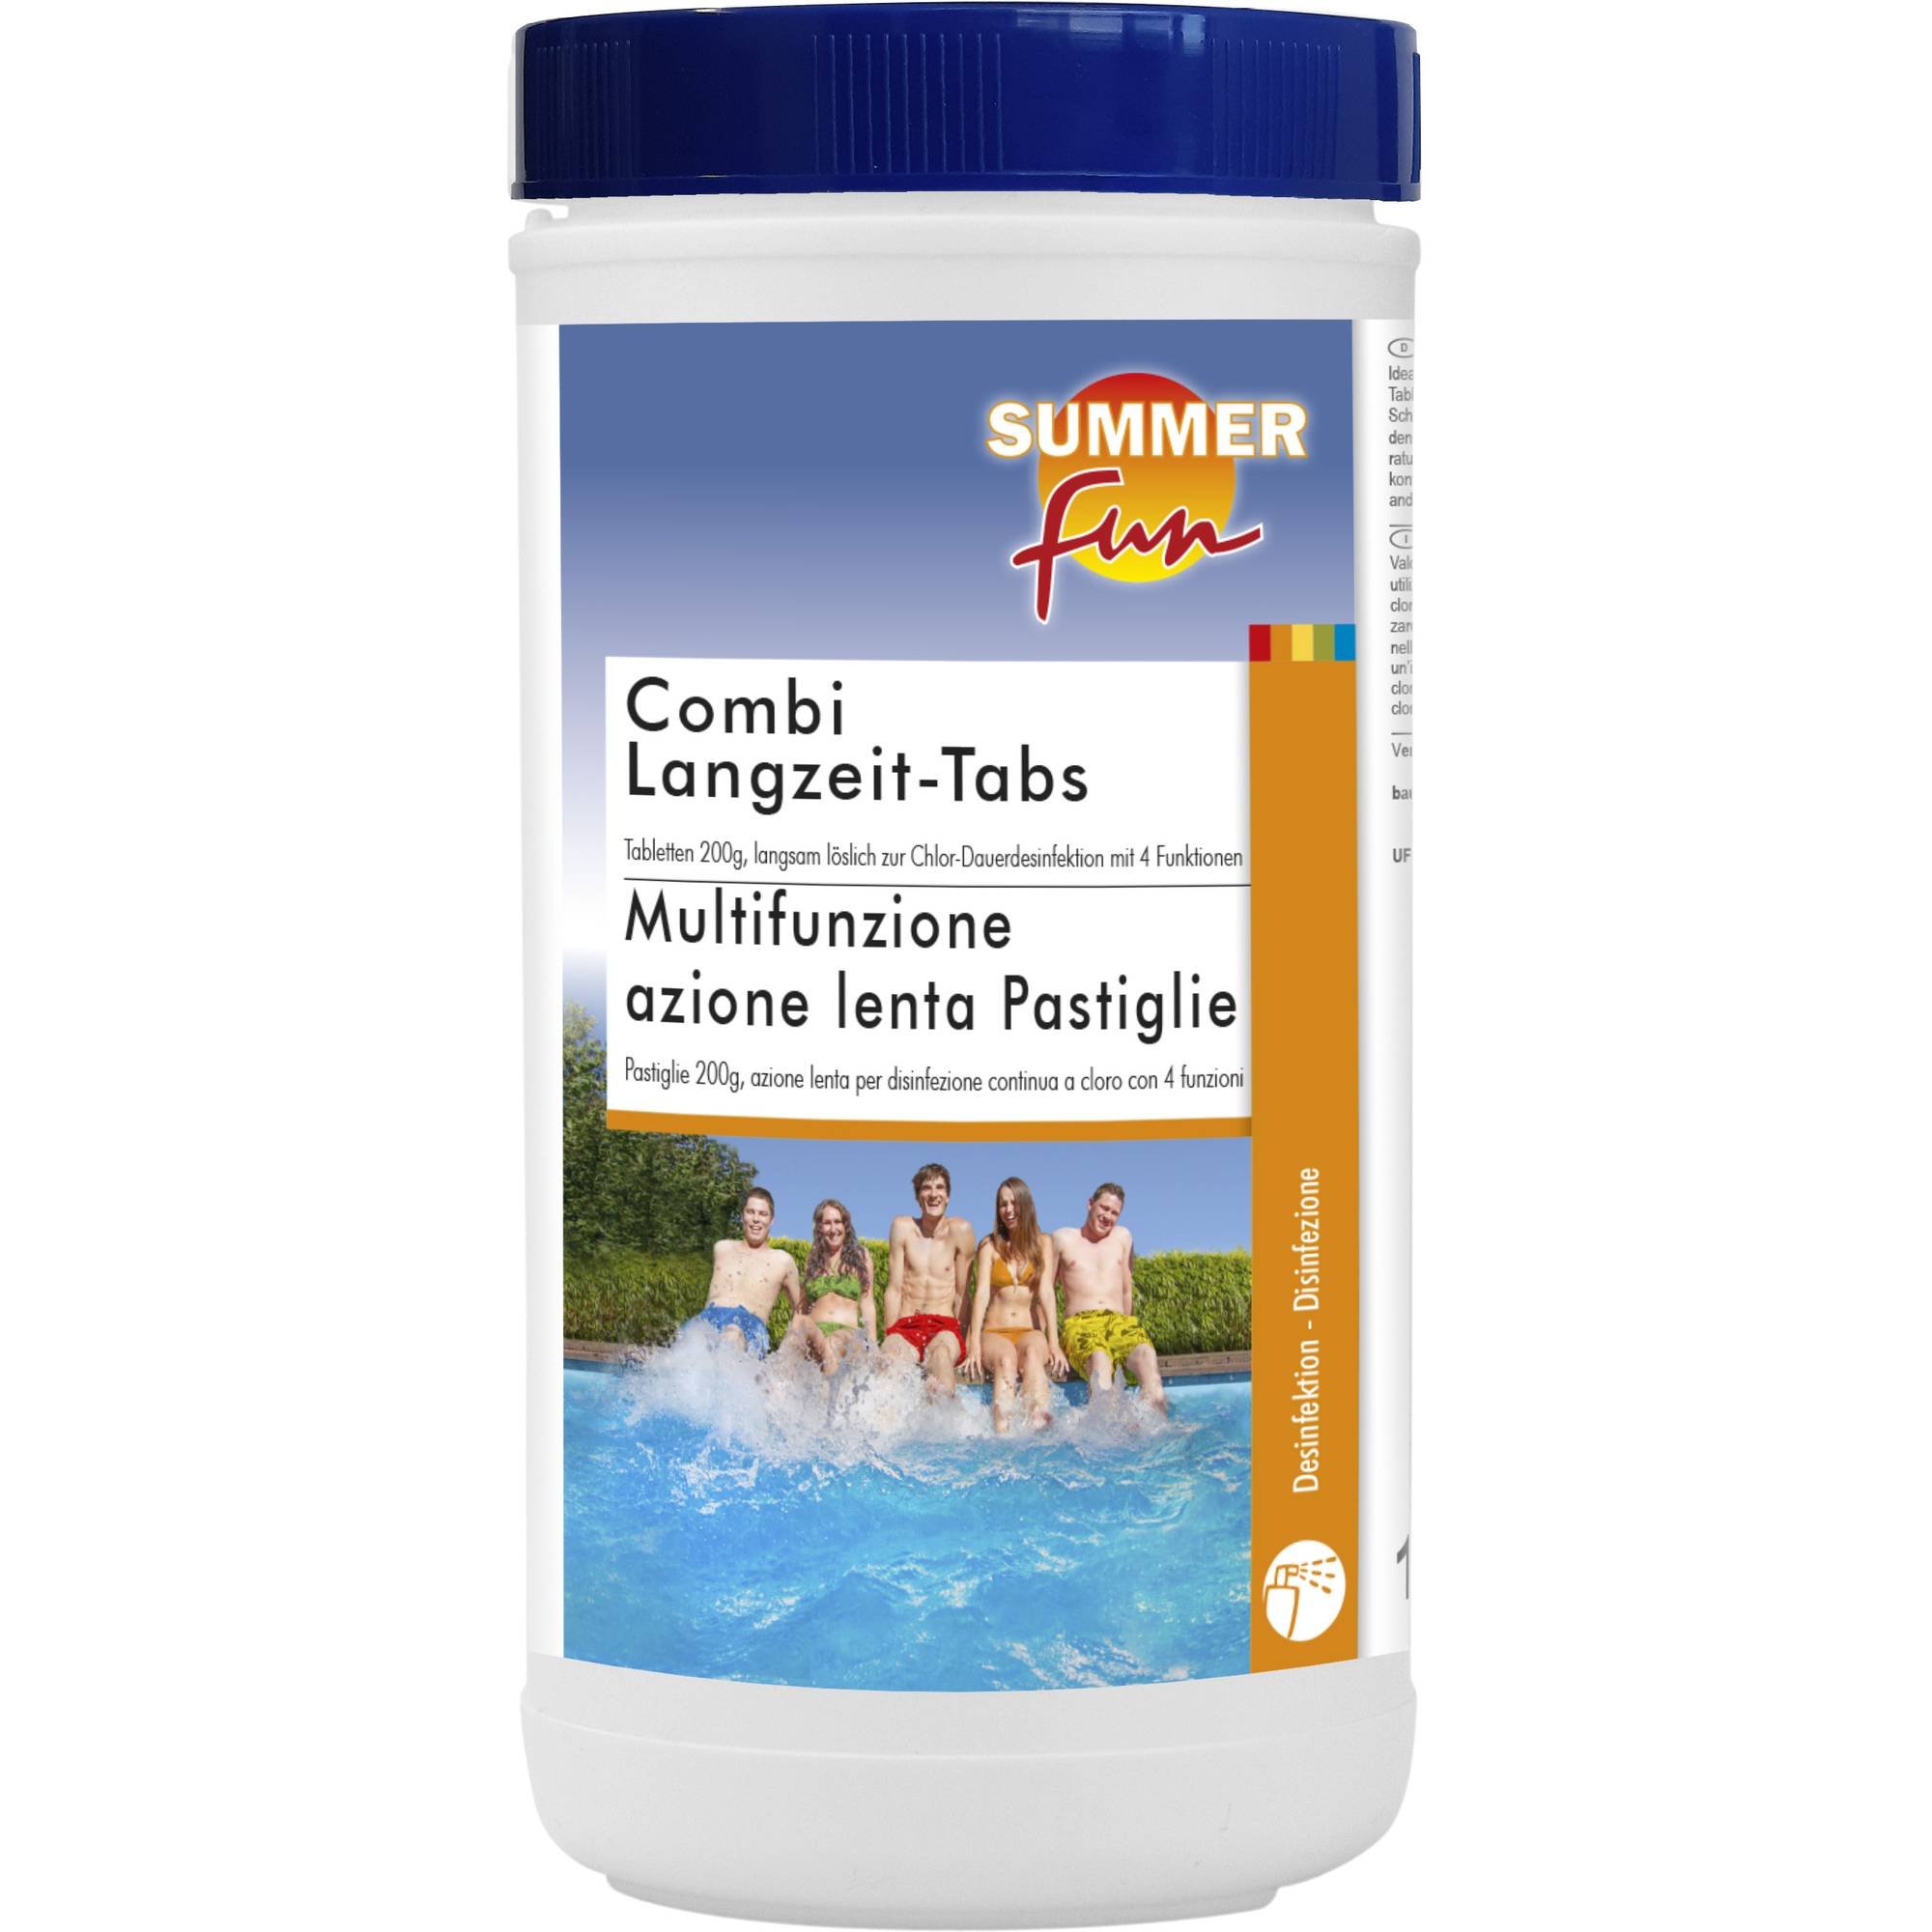 Summer Fun - Combi Langzeit-Tabs - 200g Tabletten, 1,2 kg